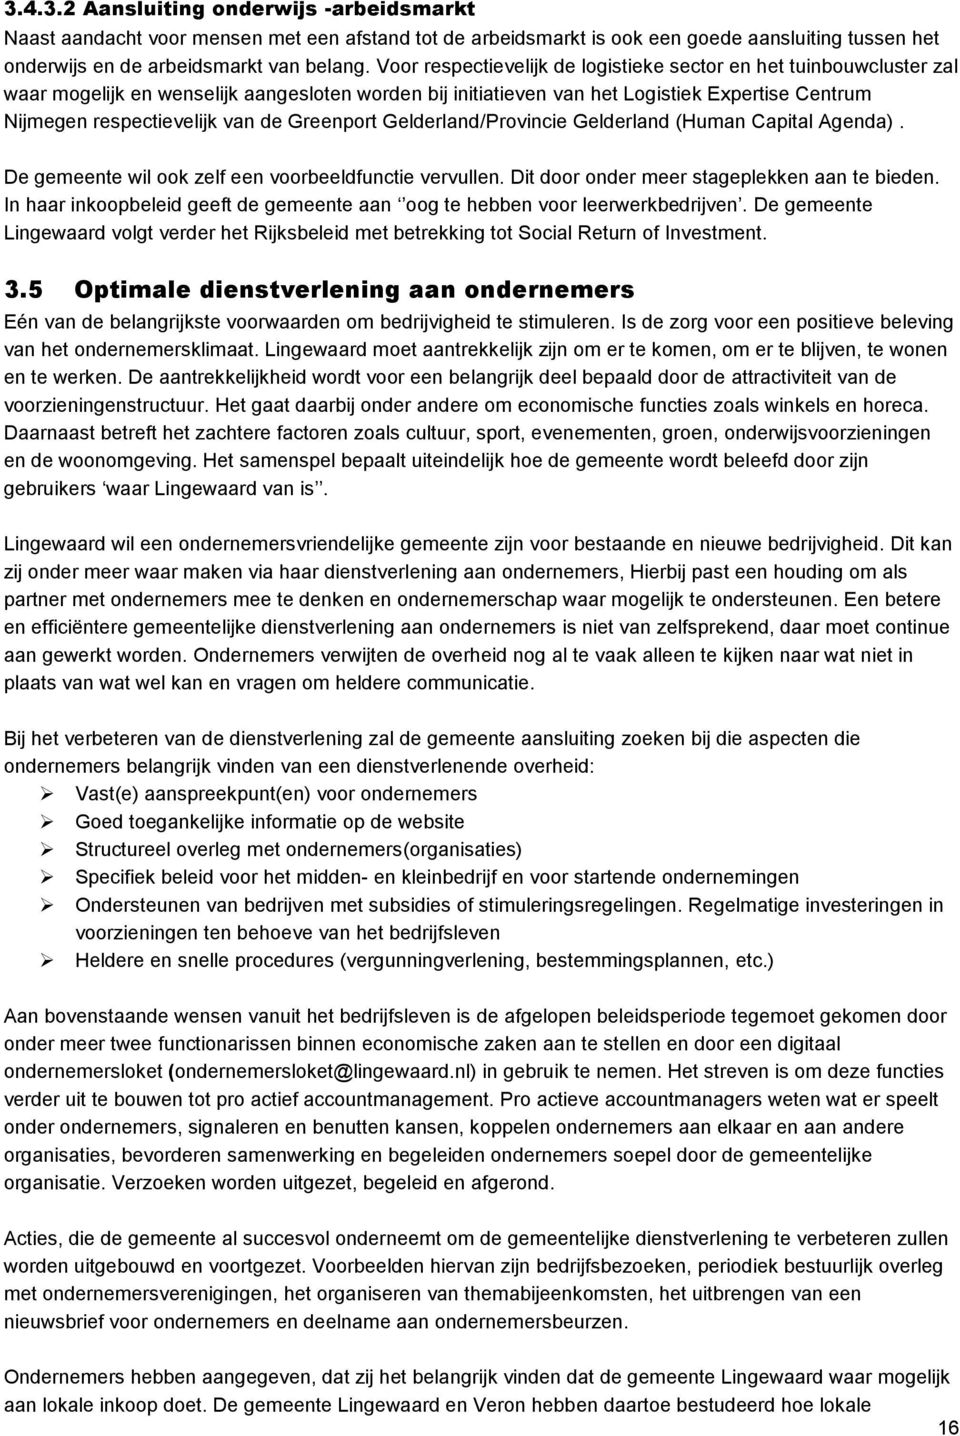 Greenport Gelderland/Provincie Gelderland (Human Capital Agenda). De gemeente wil ook zelf een voorbeeldfunctie vervullen. Dit door onder meer stageplekken aan te bieden.